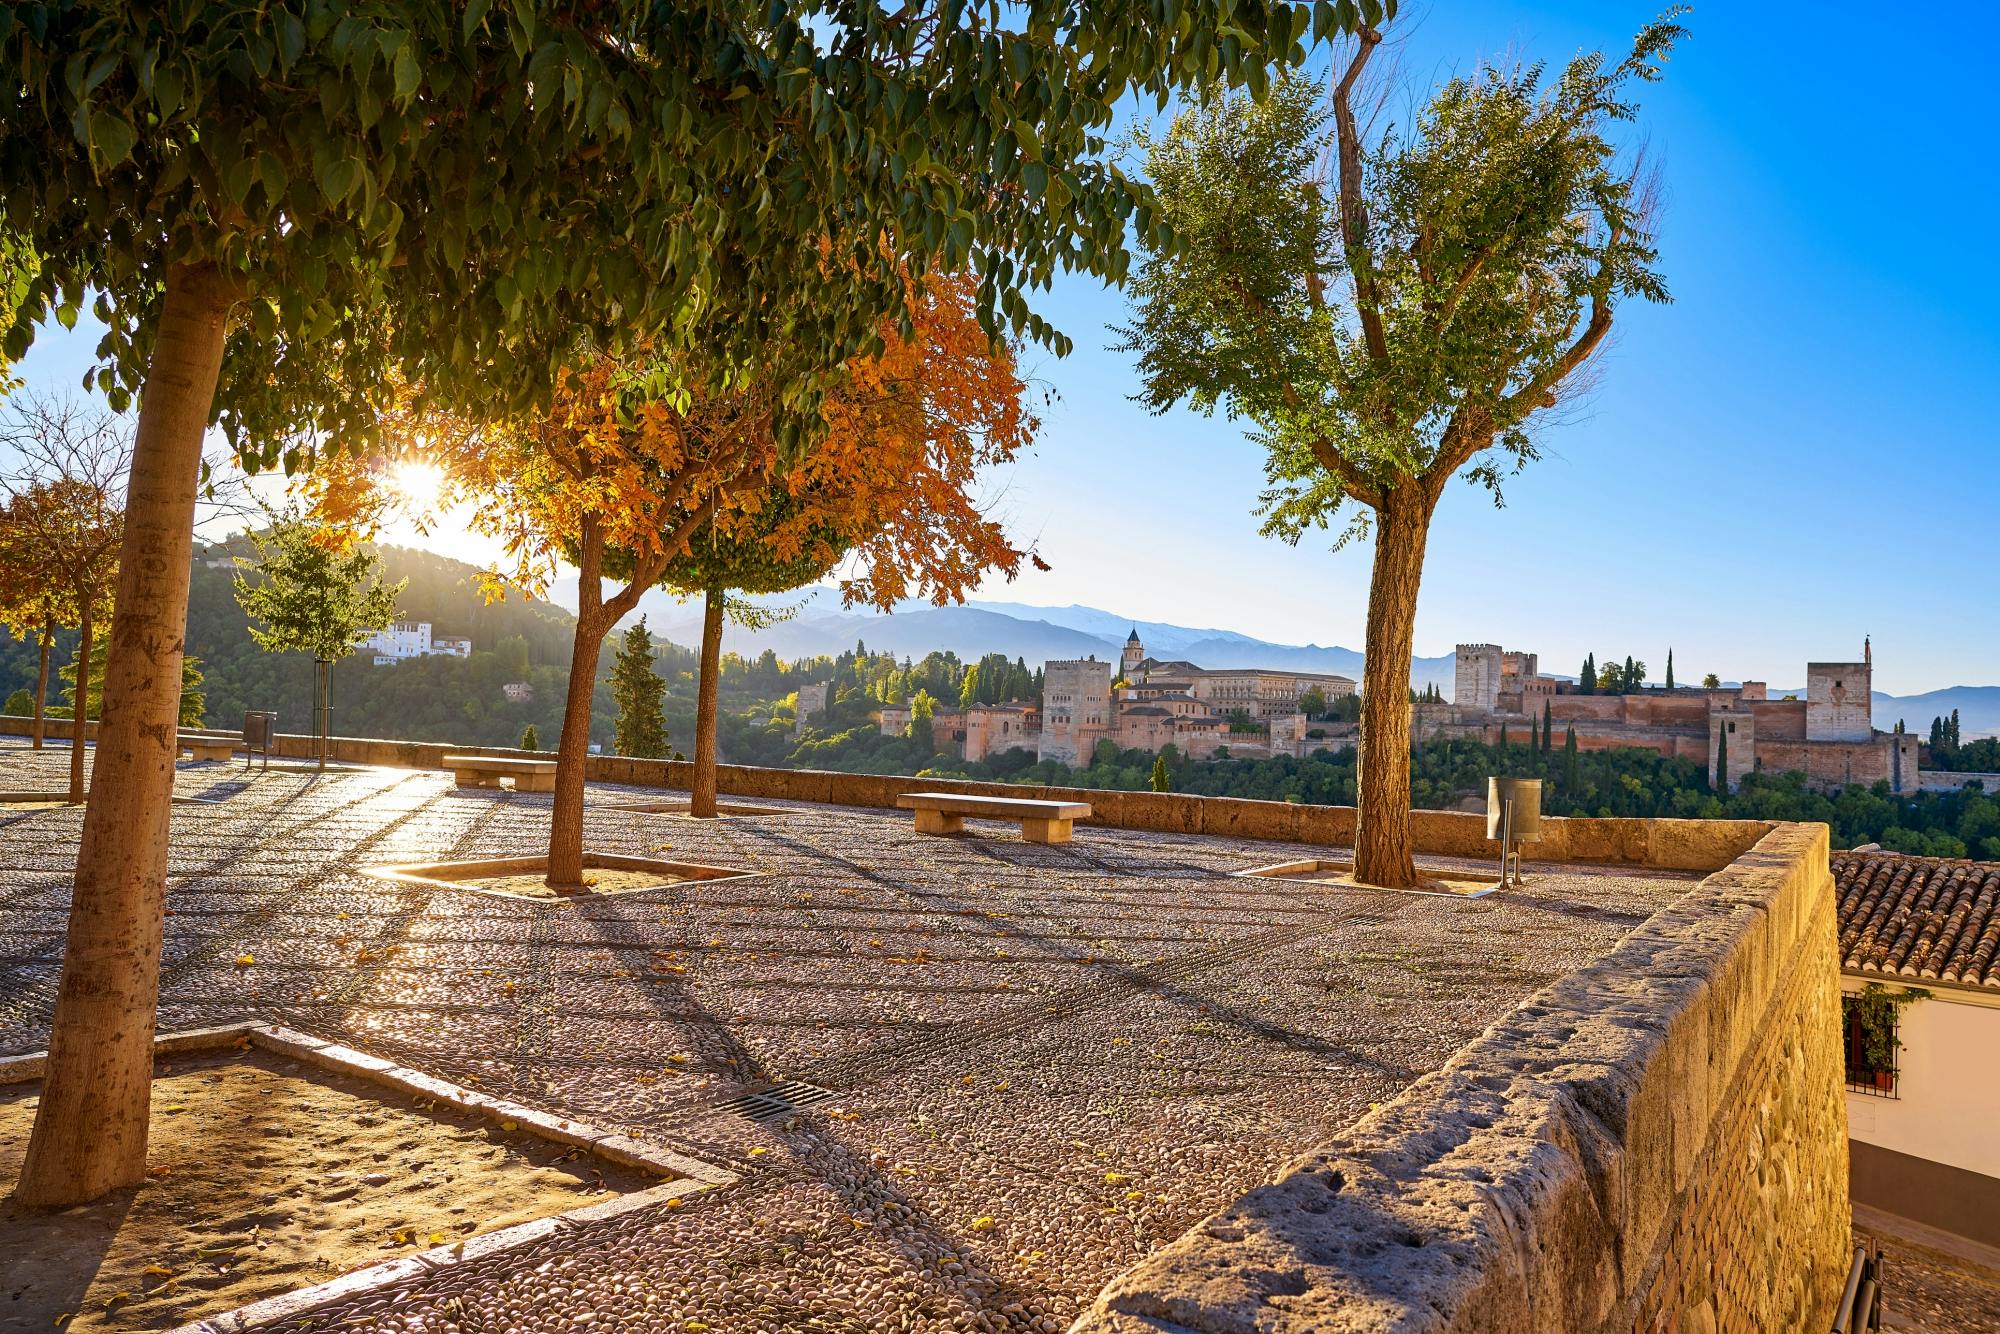 Tagesausflug nach Granada ab Malaga in Ihrer Freizeit